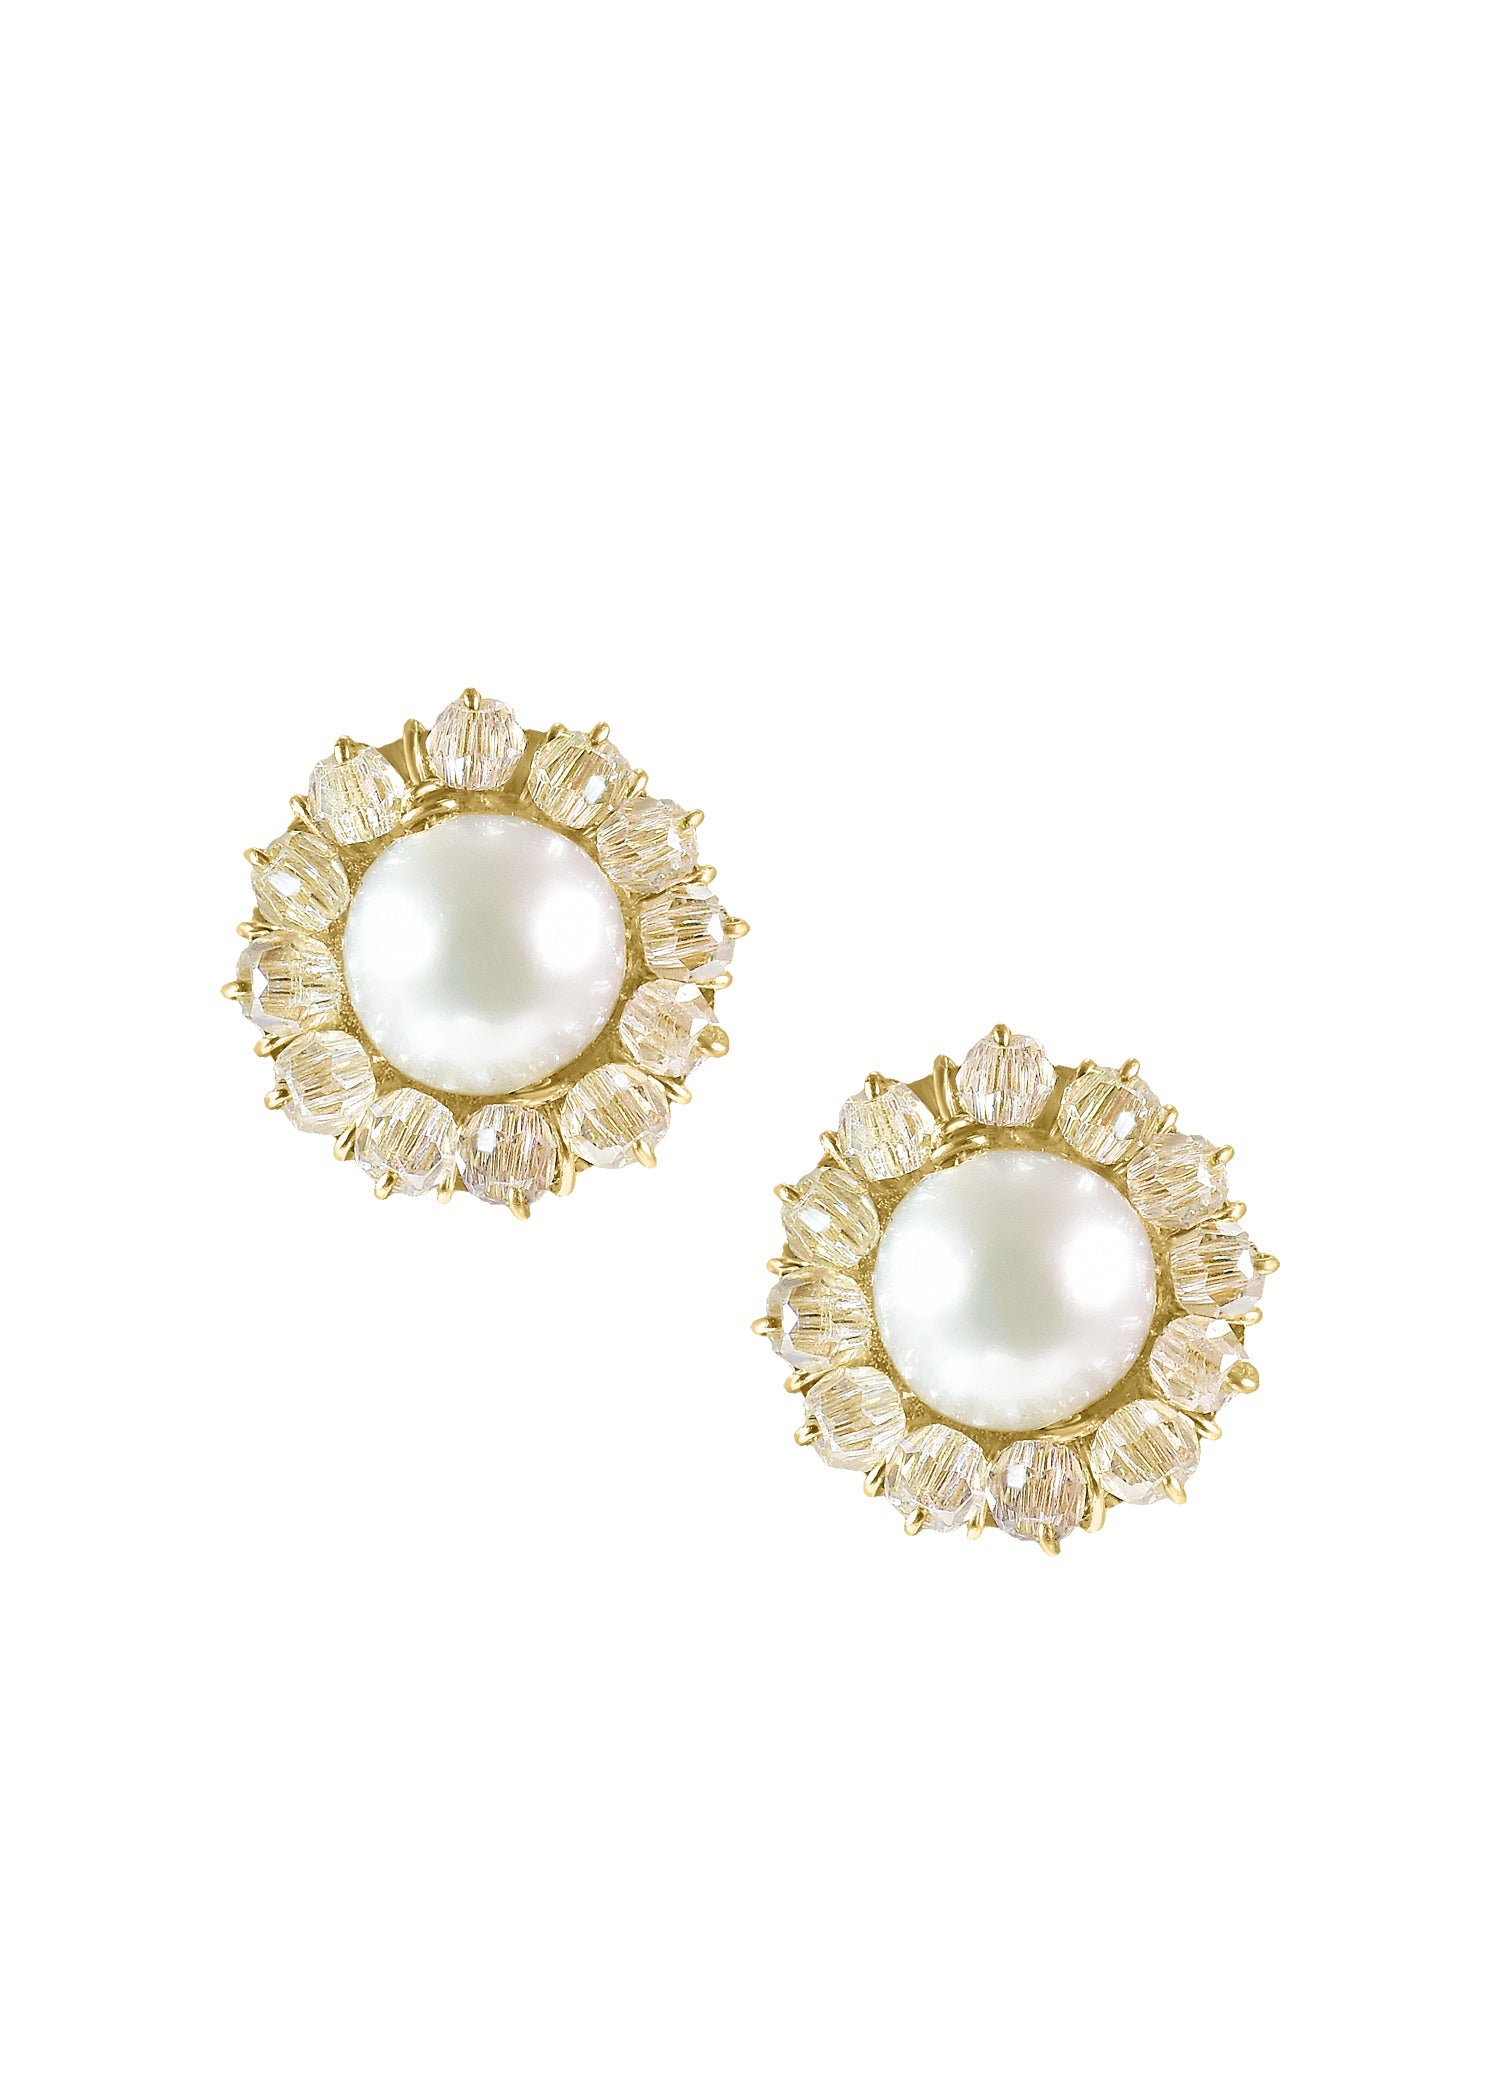 Freshwater pearl Crystal 14k gold fill Earrings measure 3/8" in diameter Handmade in our Los Angeles studio